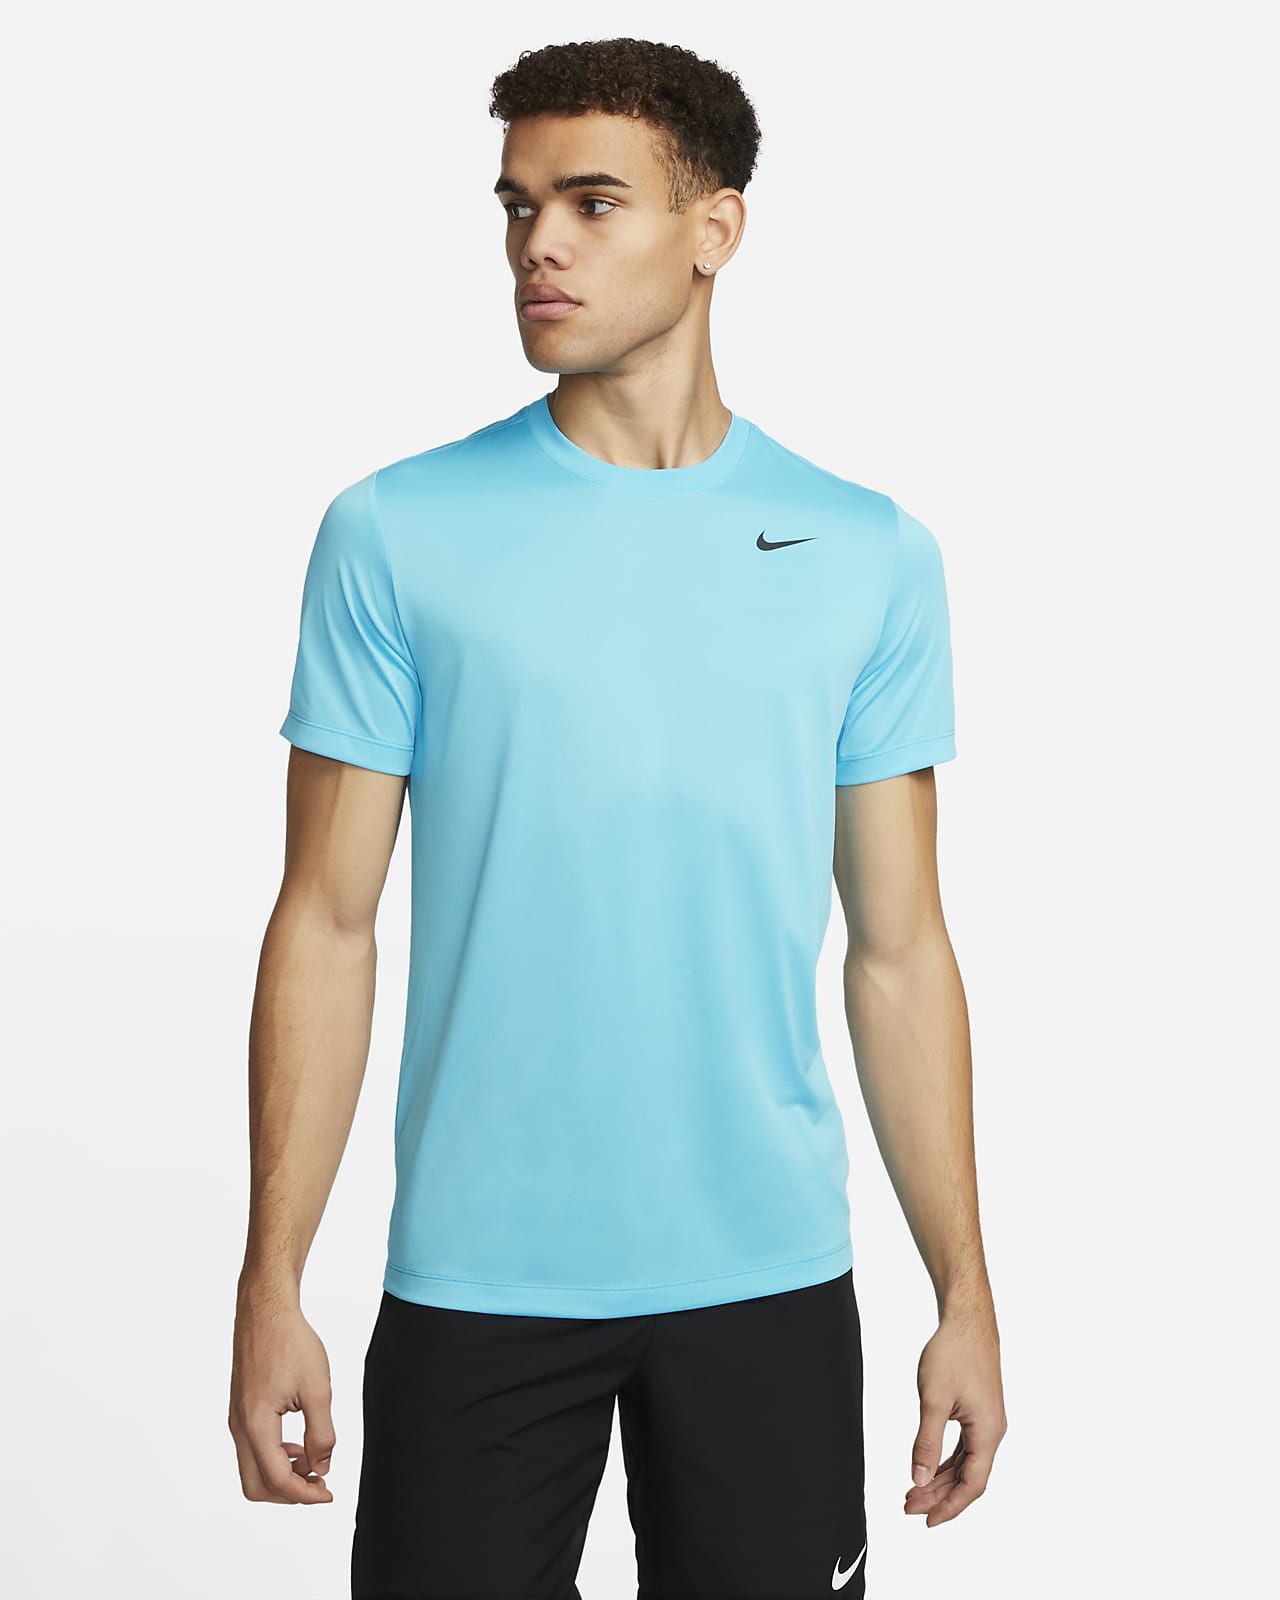 Nike Men's Fitness T-Shirt. Nike IN